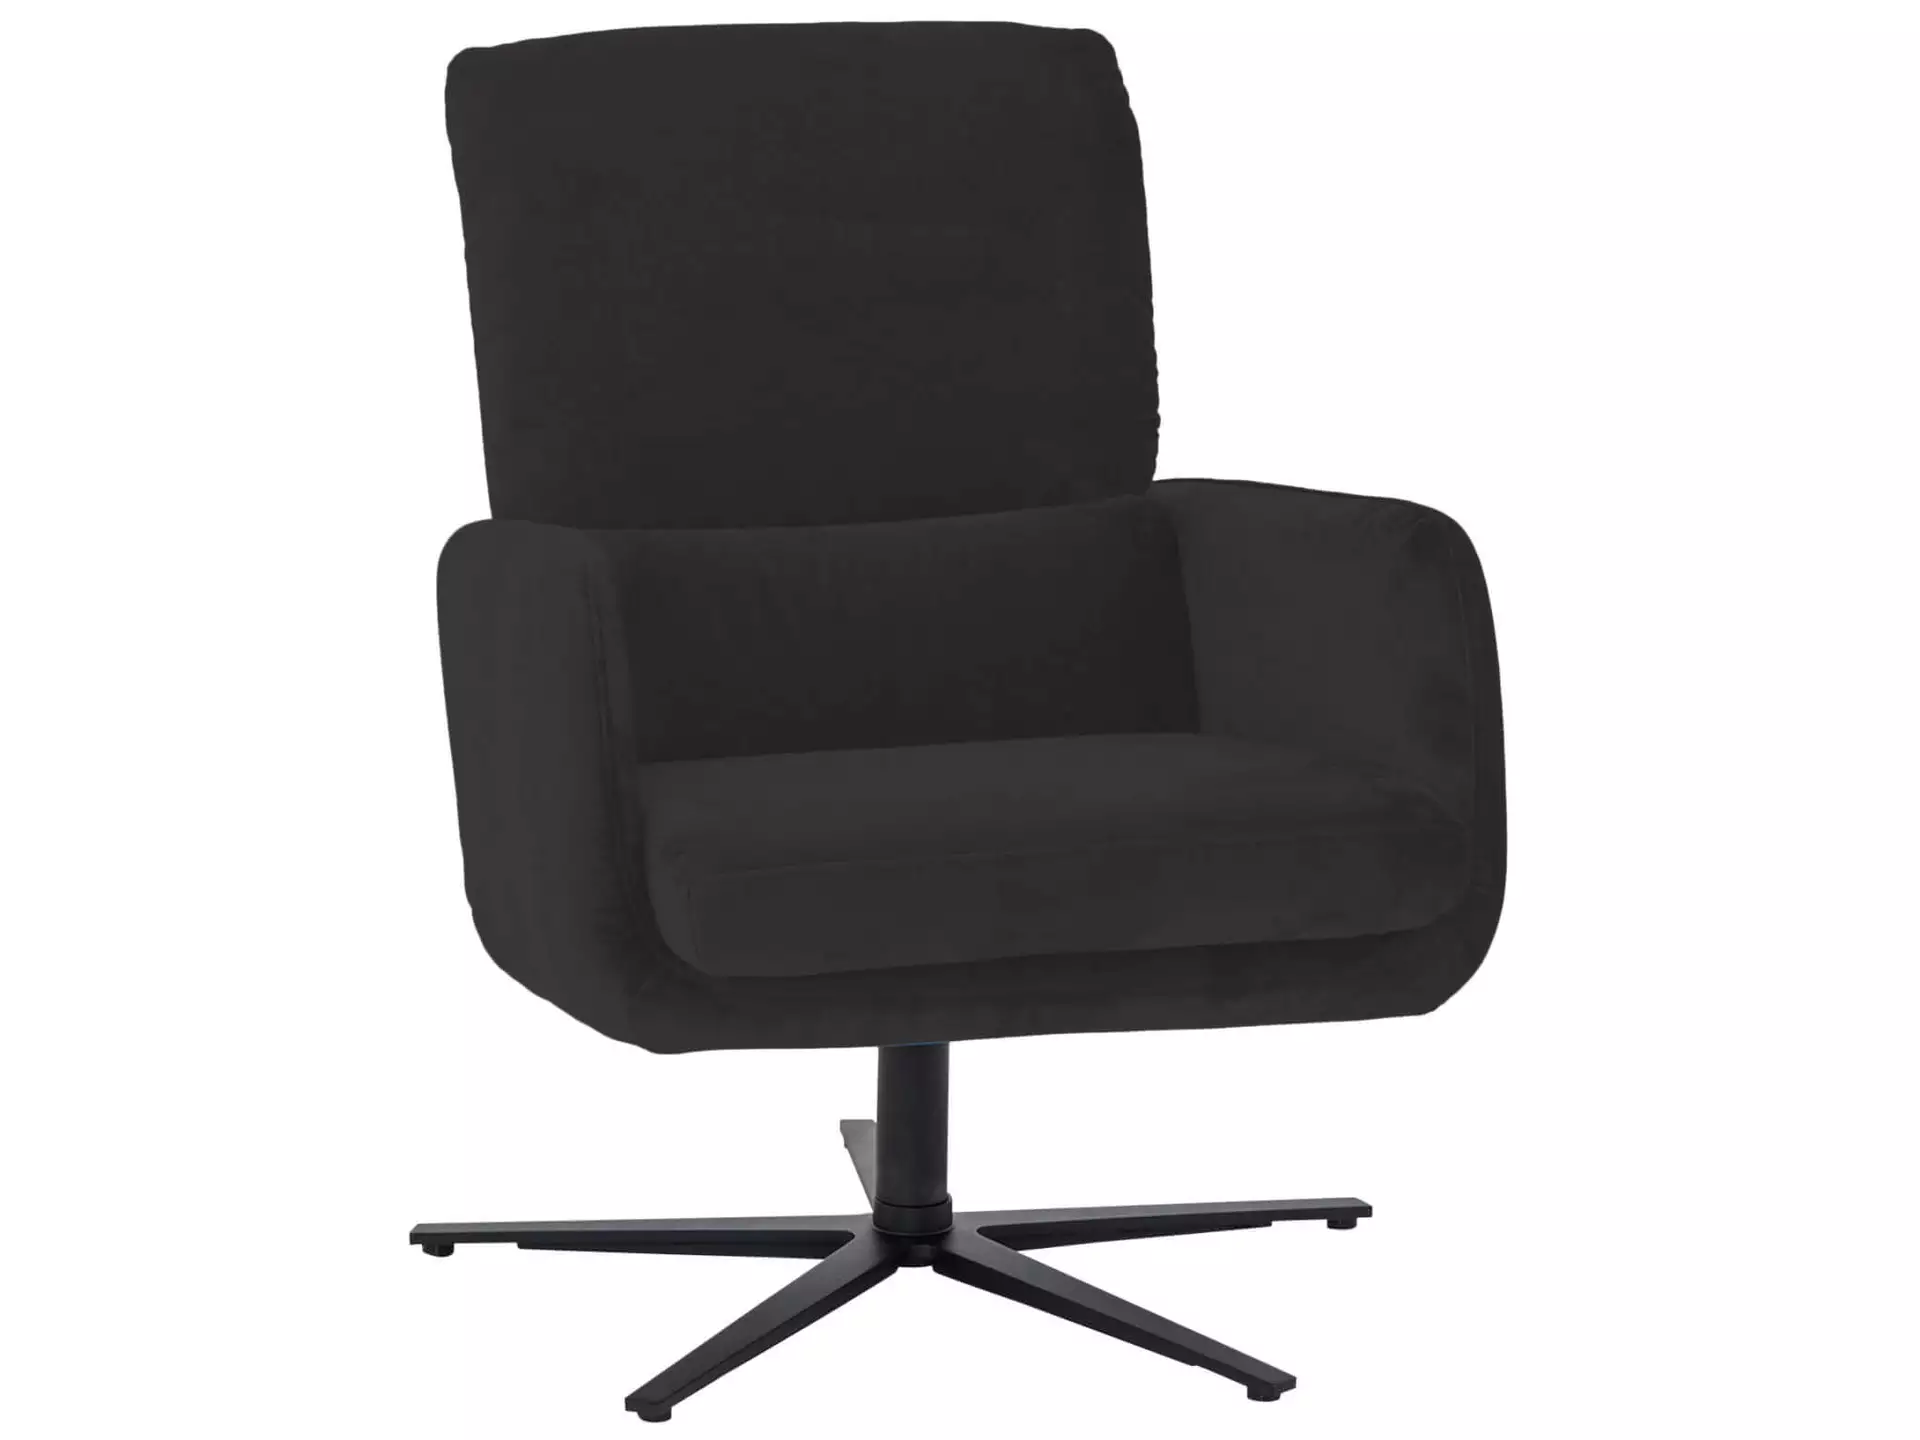 Sessel 8155 Basic Himolla / Farbe: Teer / Material: Leder Basic